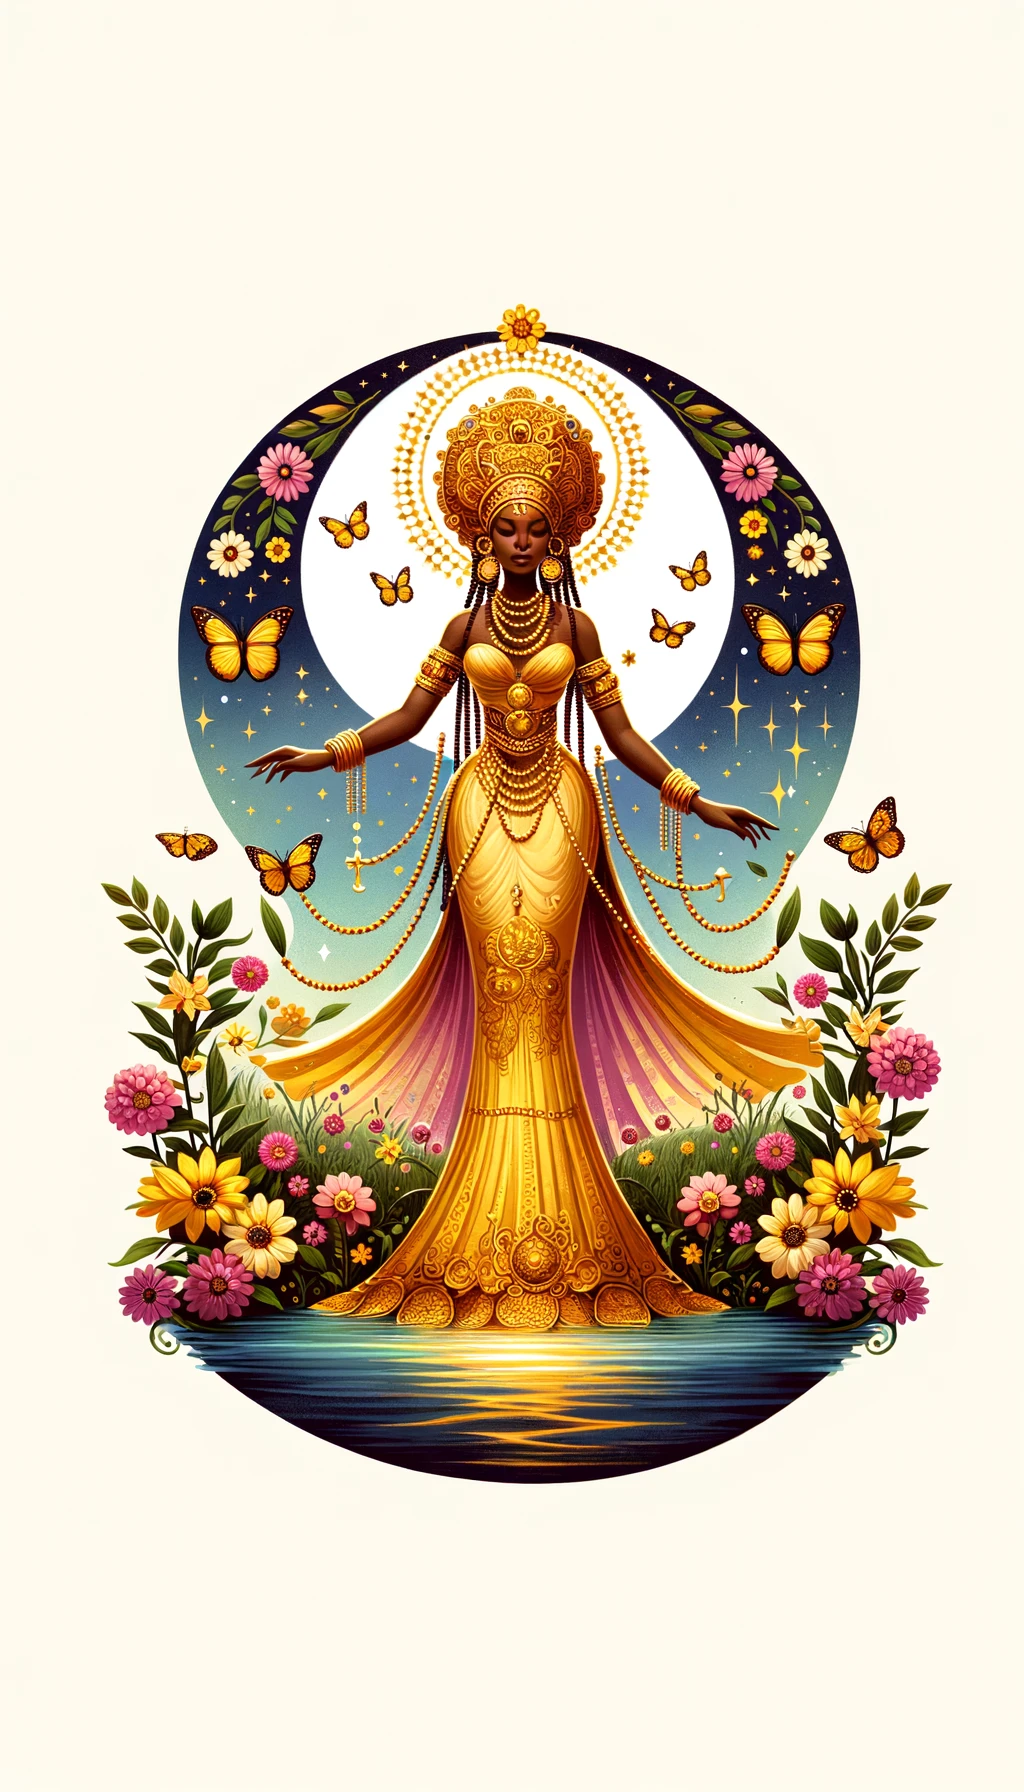 Representación de Oshun, Orisha de la religión yoruba, con vestimentas amarillas y doradas, de pie junto a un río, rodeada de flores y mariposas, simbolizando su conexión con la naturaleza, la belleza y el amor.